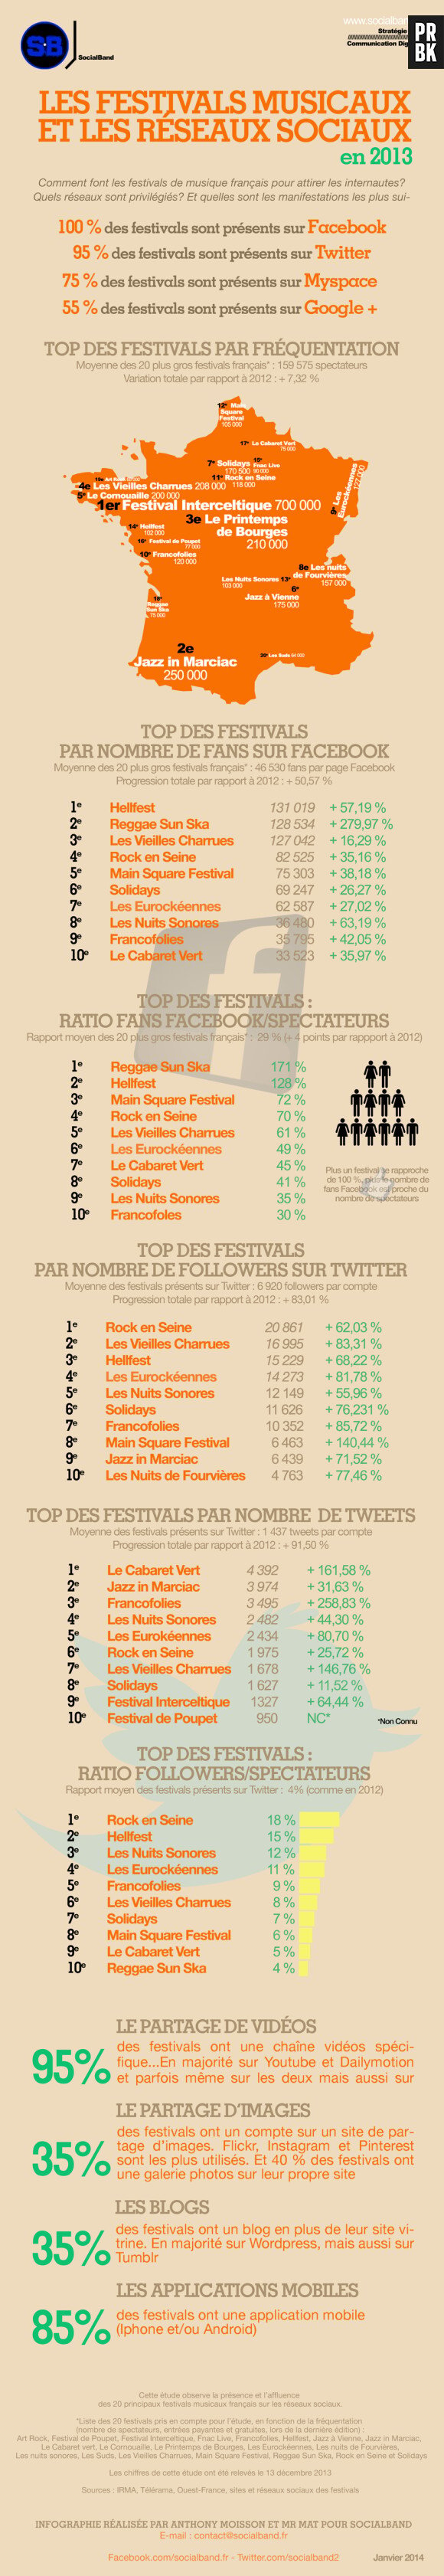 Rock en Seine, Hellfest, Solidays... : l'étude de Social Band sur la présence et l'affluence des 20 principaux festivals de musique sur les réseaux sociaux